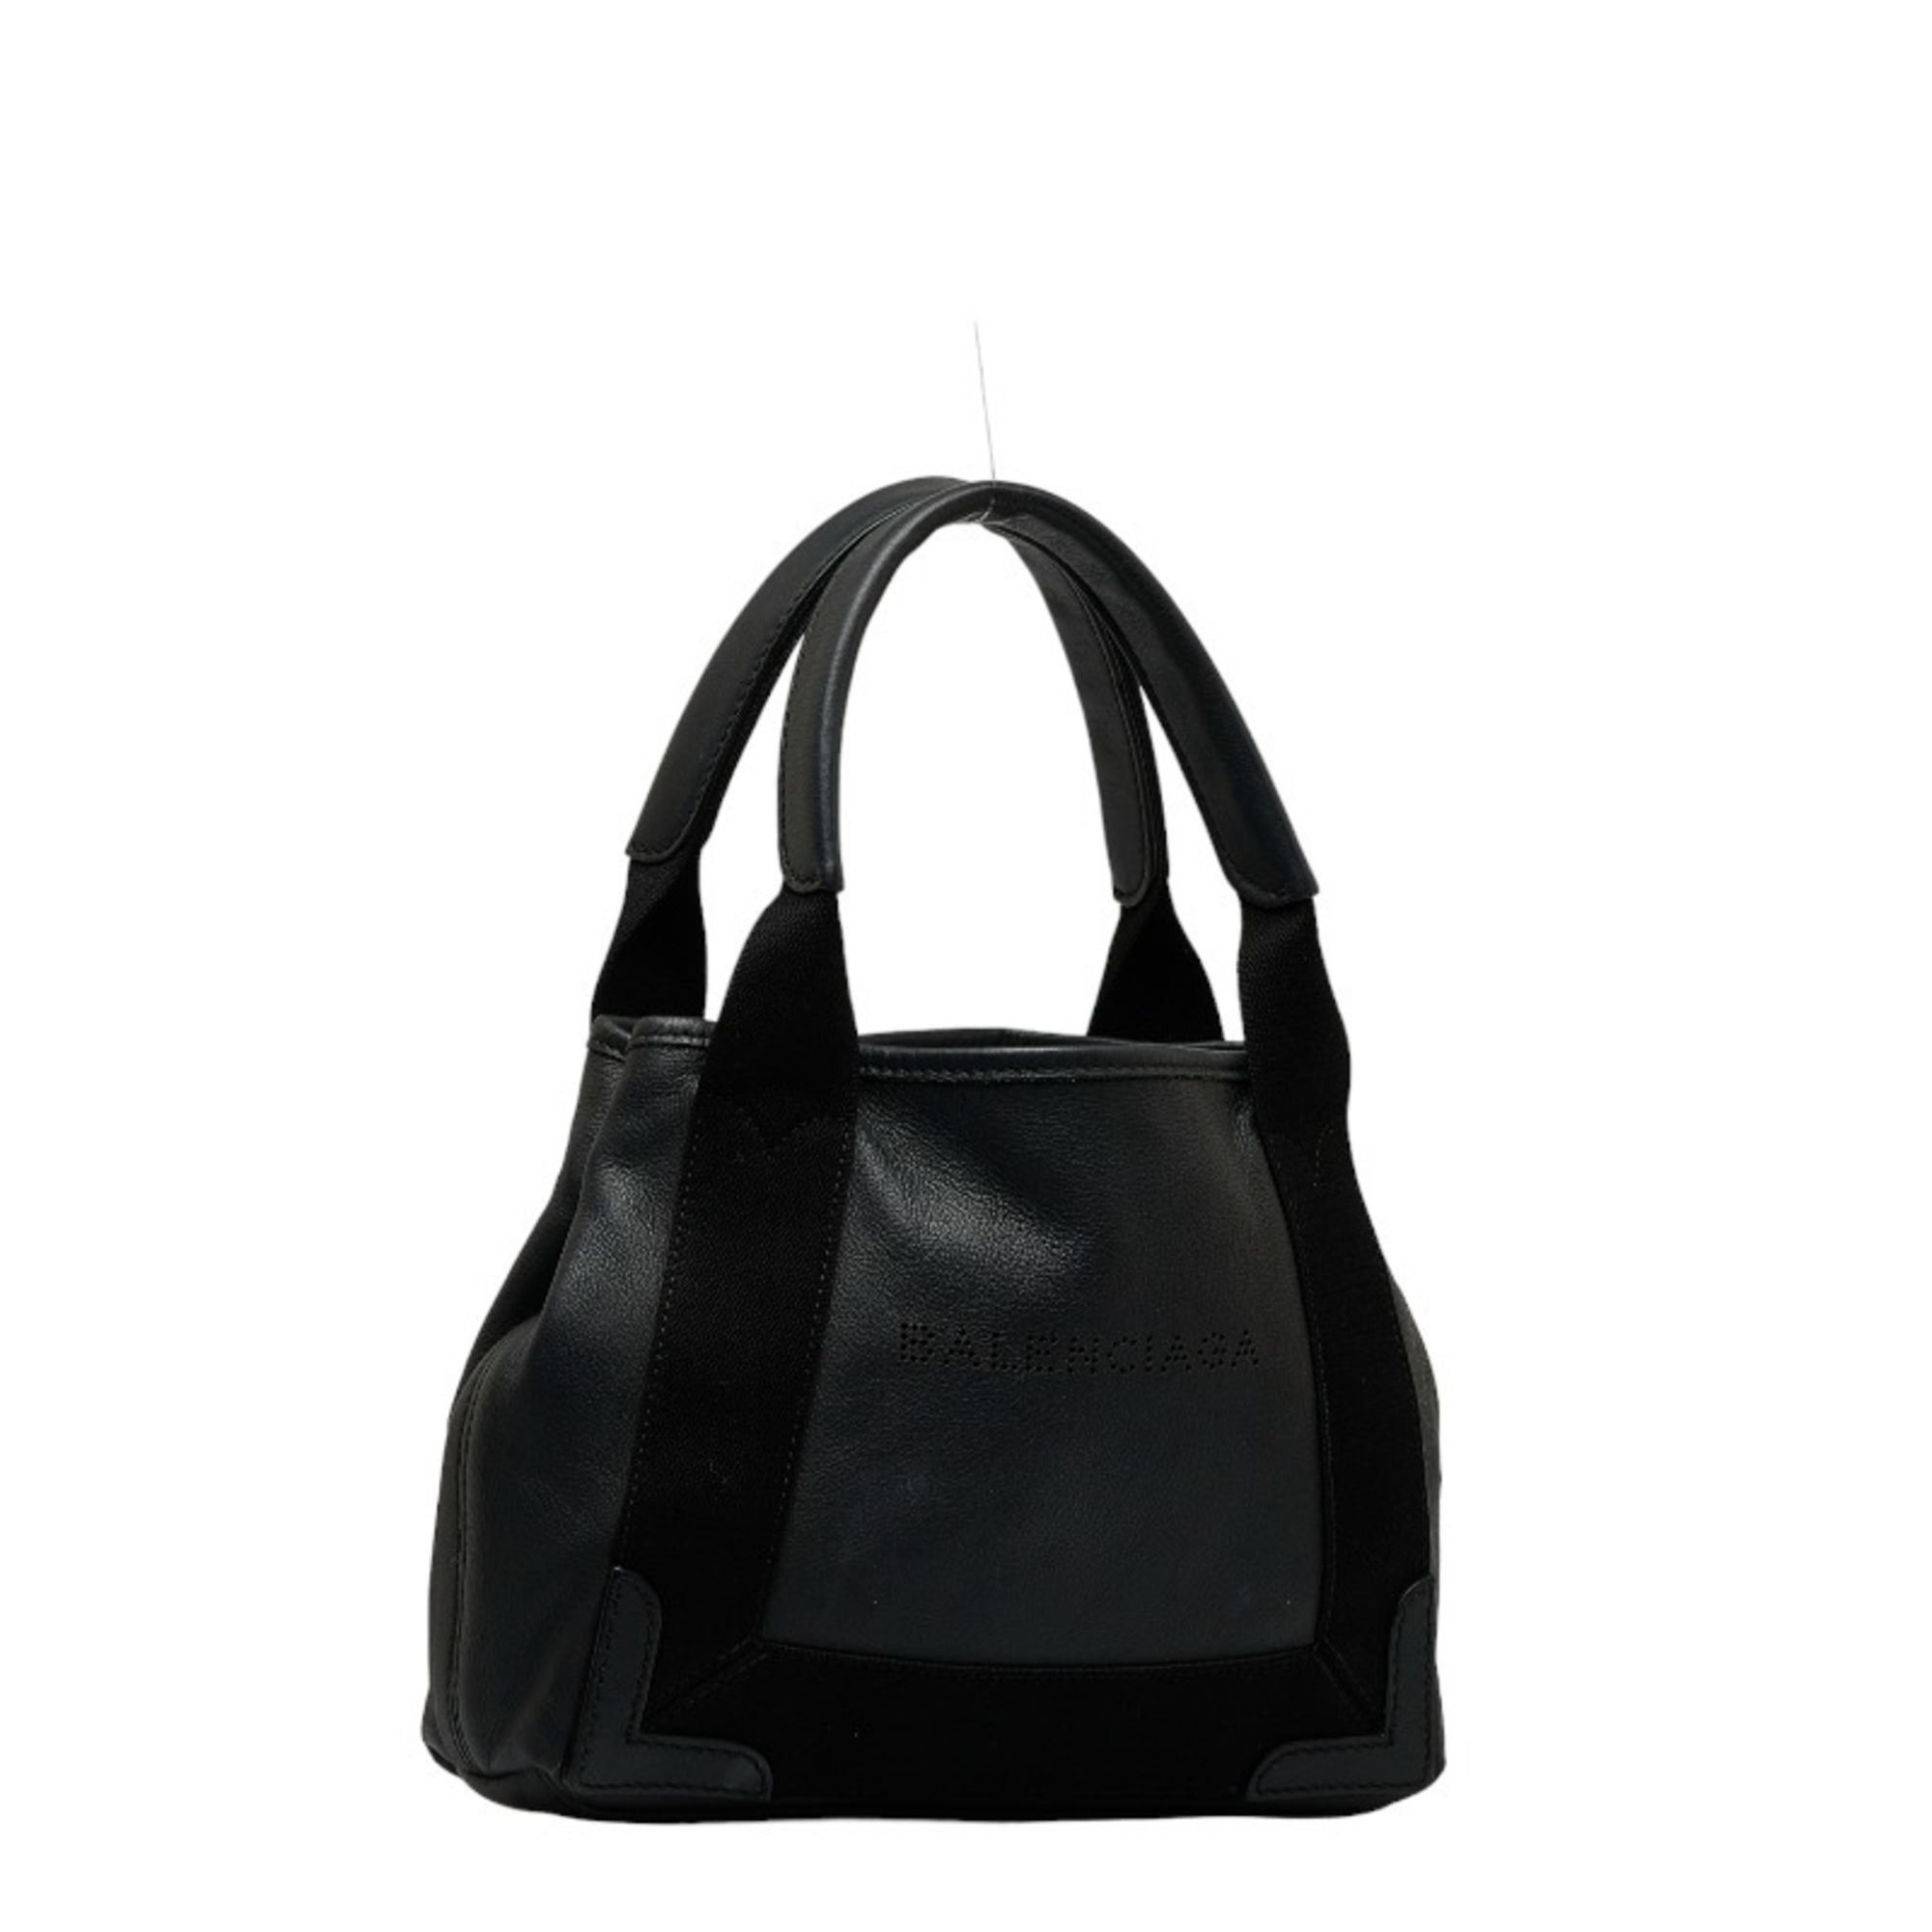 Balenciaga Navy Cabas XS Handbag Shoulder Bag 390346 Black Leather Women's BALENCIAGA